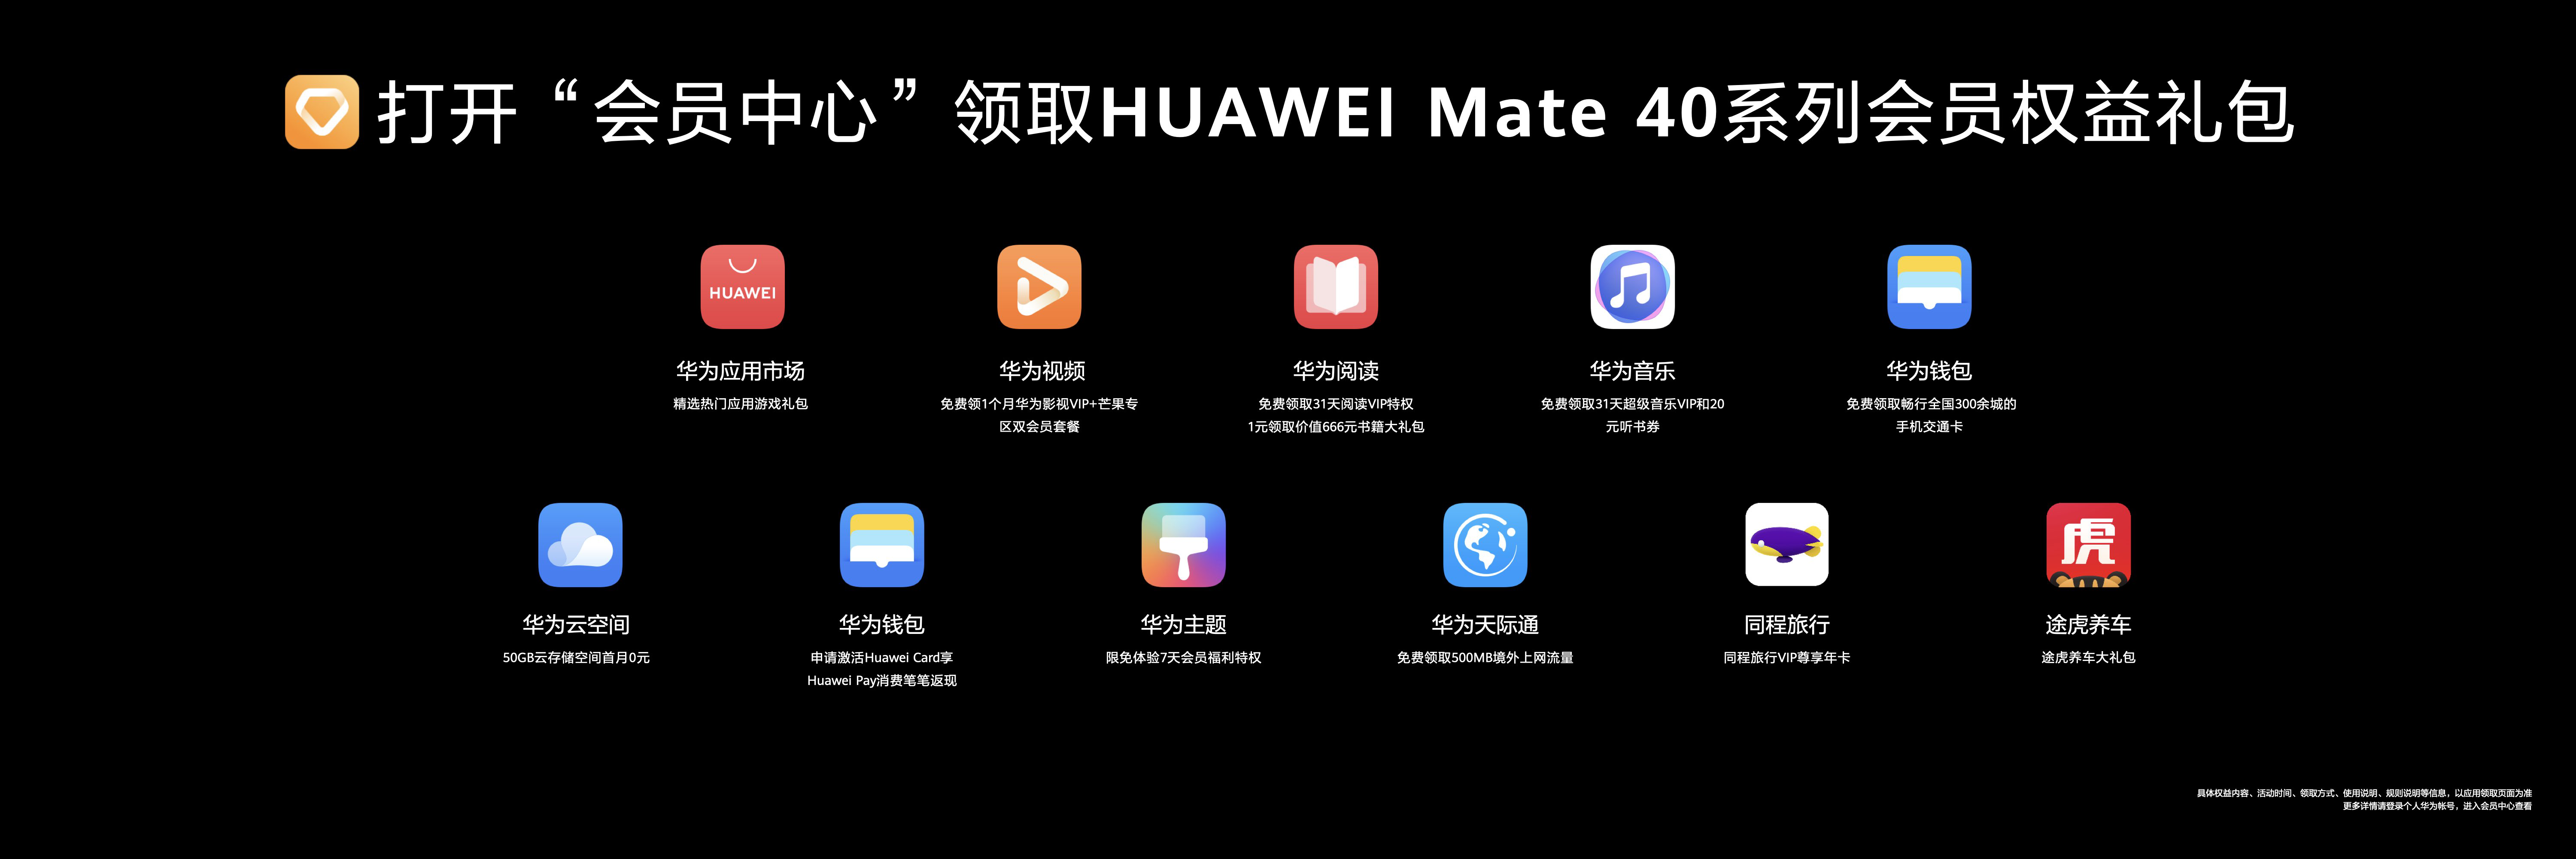 跃见美好 华为终端云服务打造Mate 40系列数字生活新体验